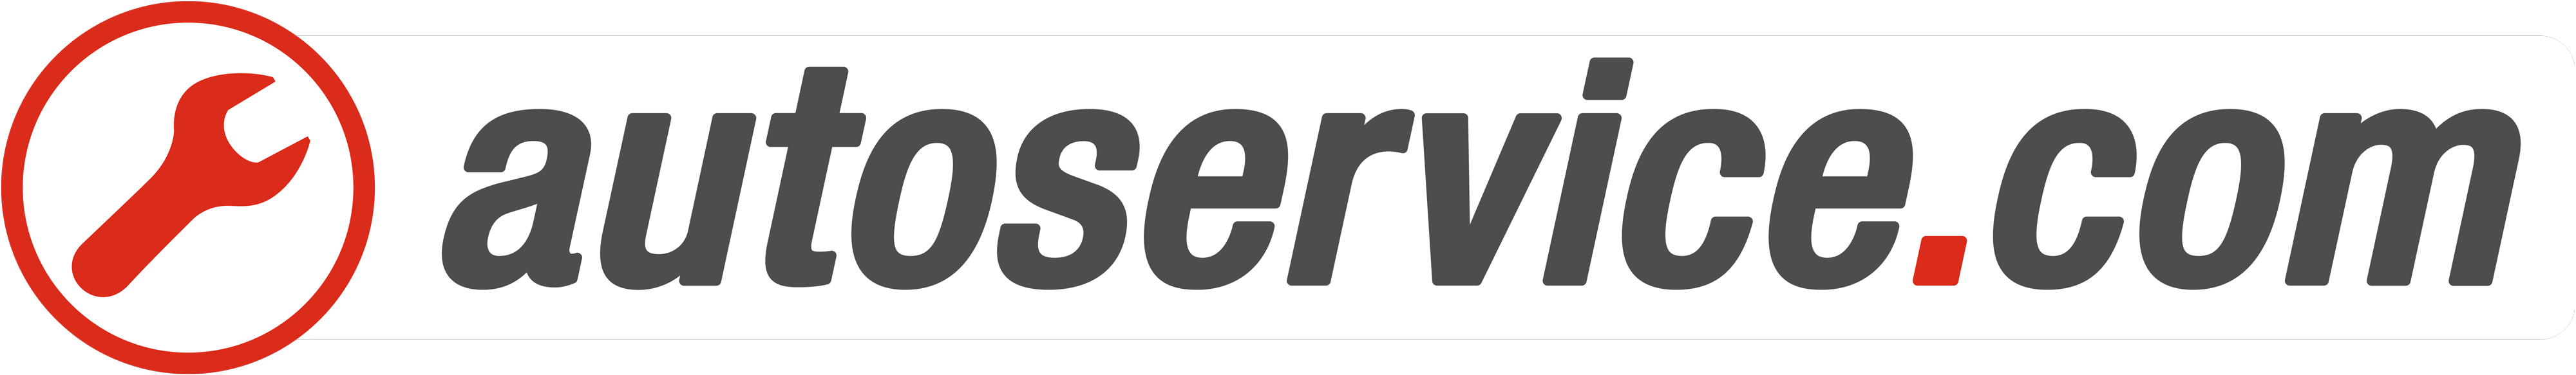 autoservice_logo